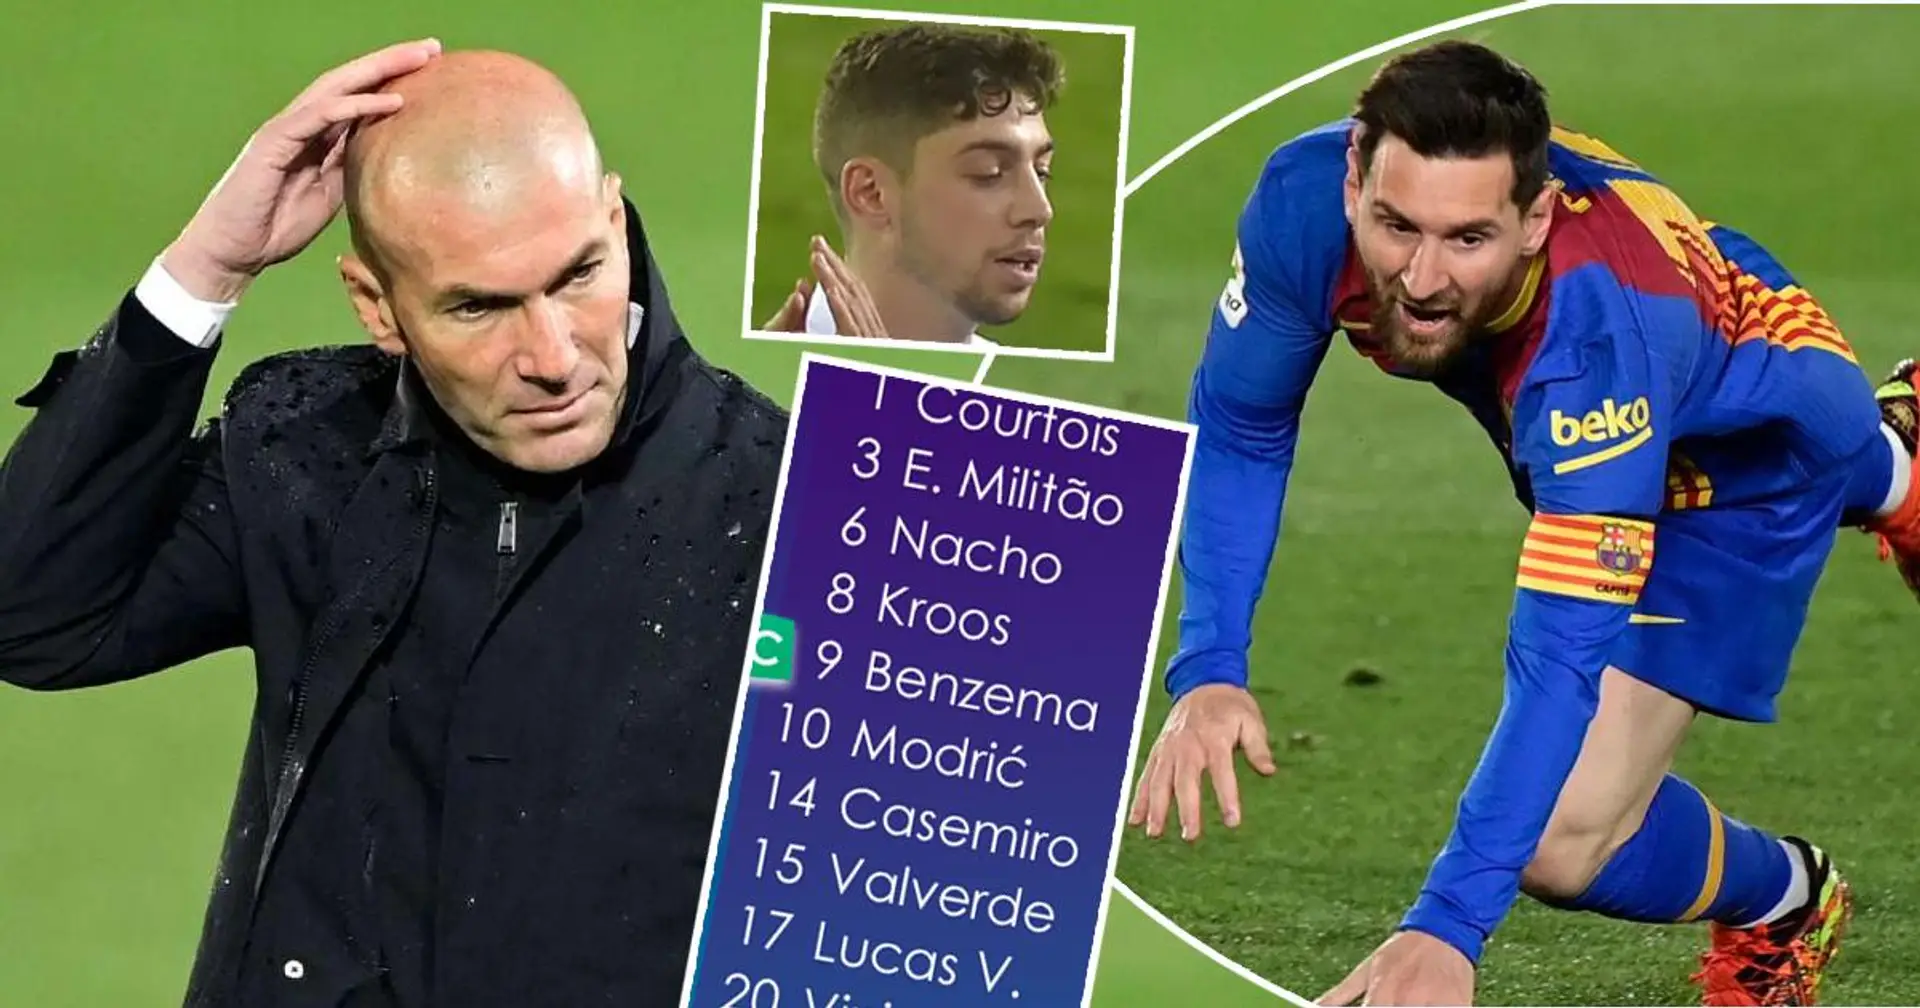 Parier sur Valverde, frapper le Barça à la pause: évaluer les décisions de Zidane lors du Clasico sur une échelle de 1 à 10